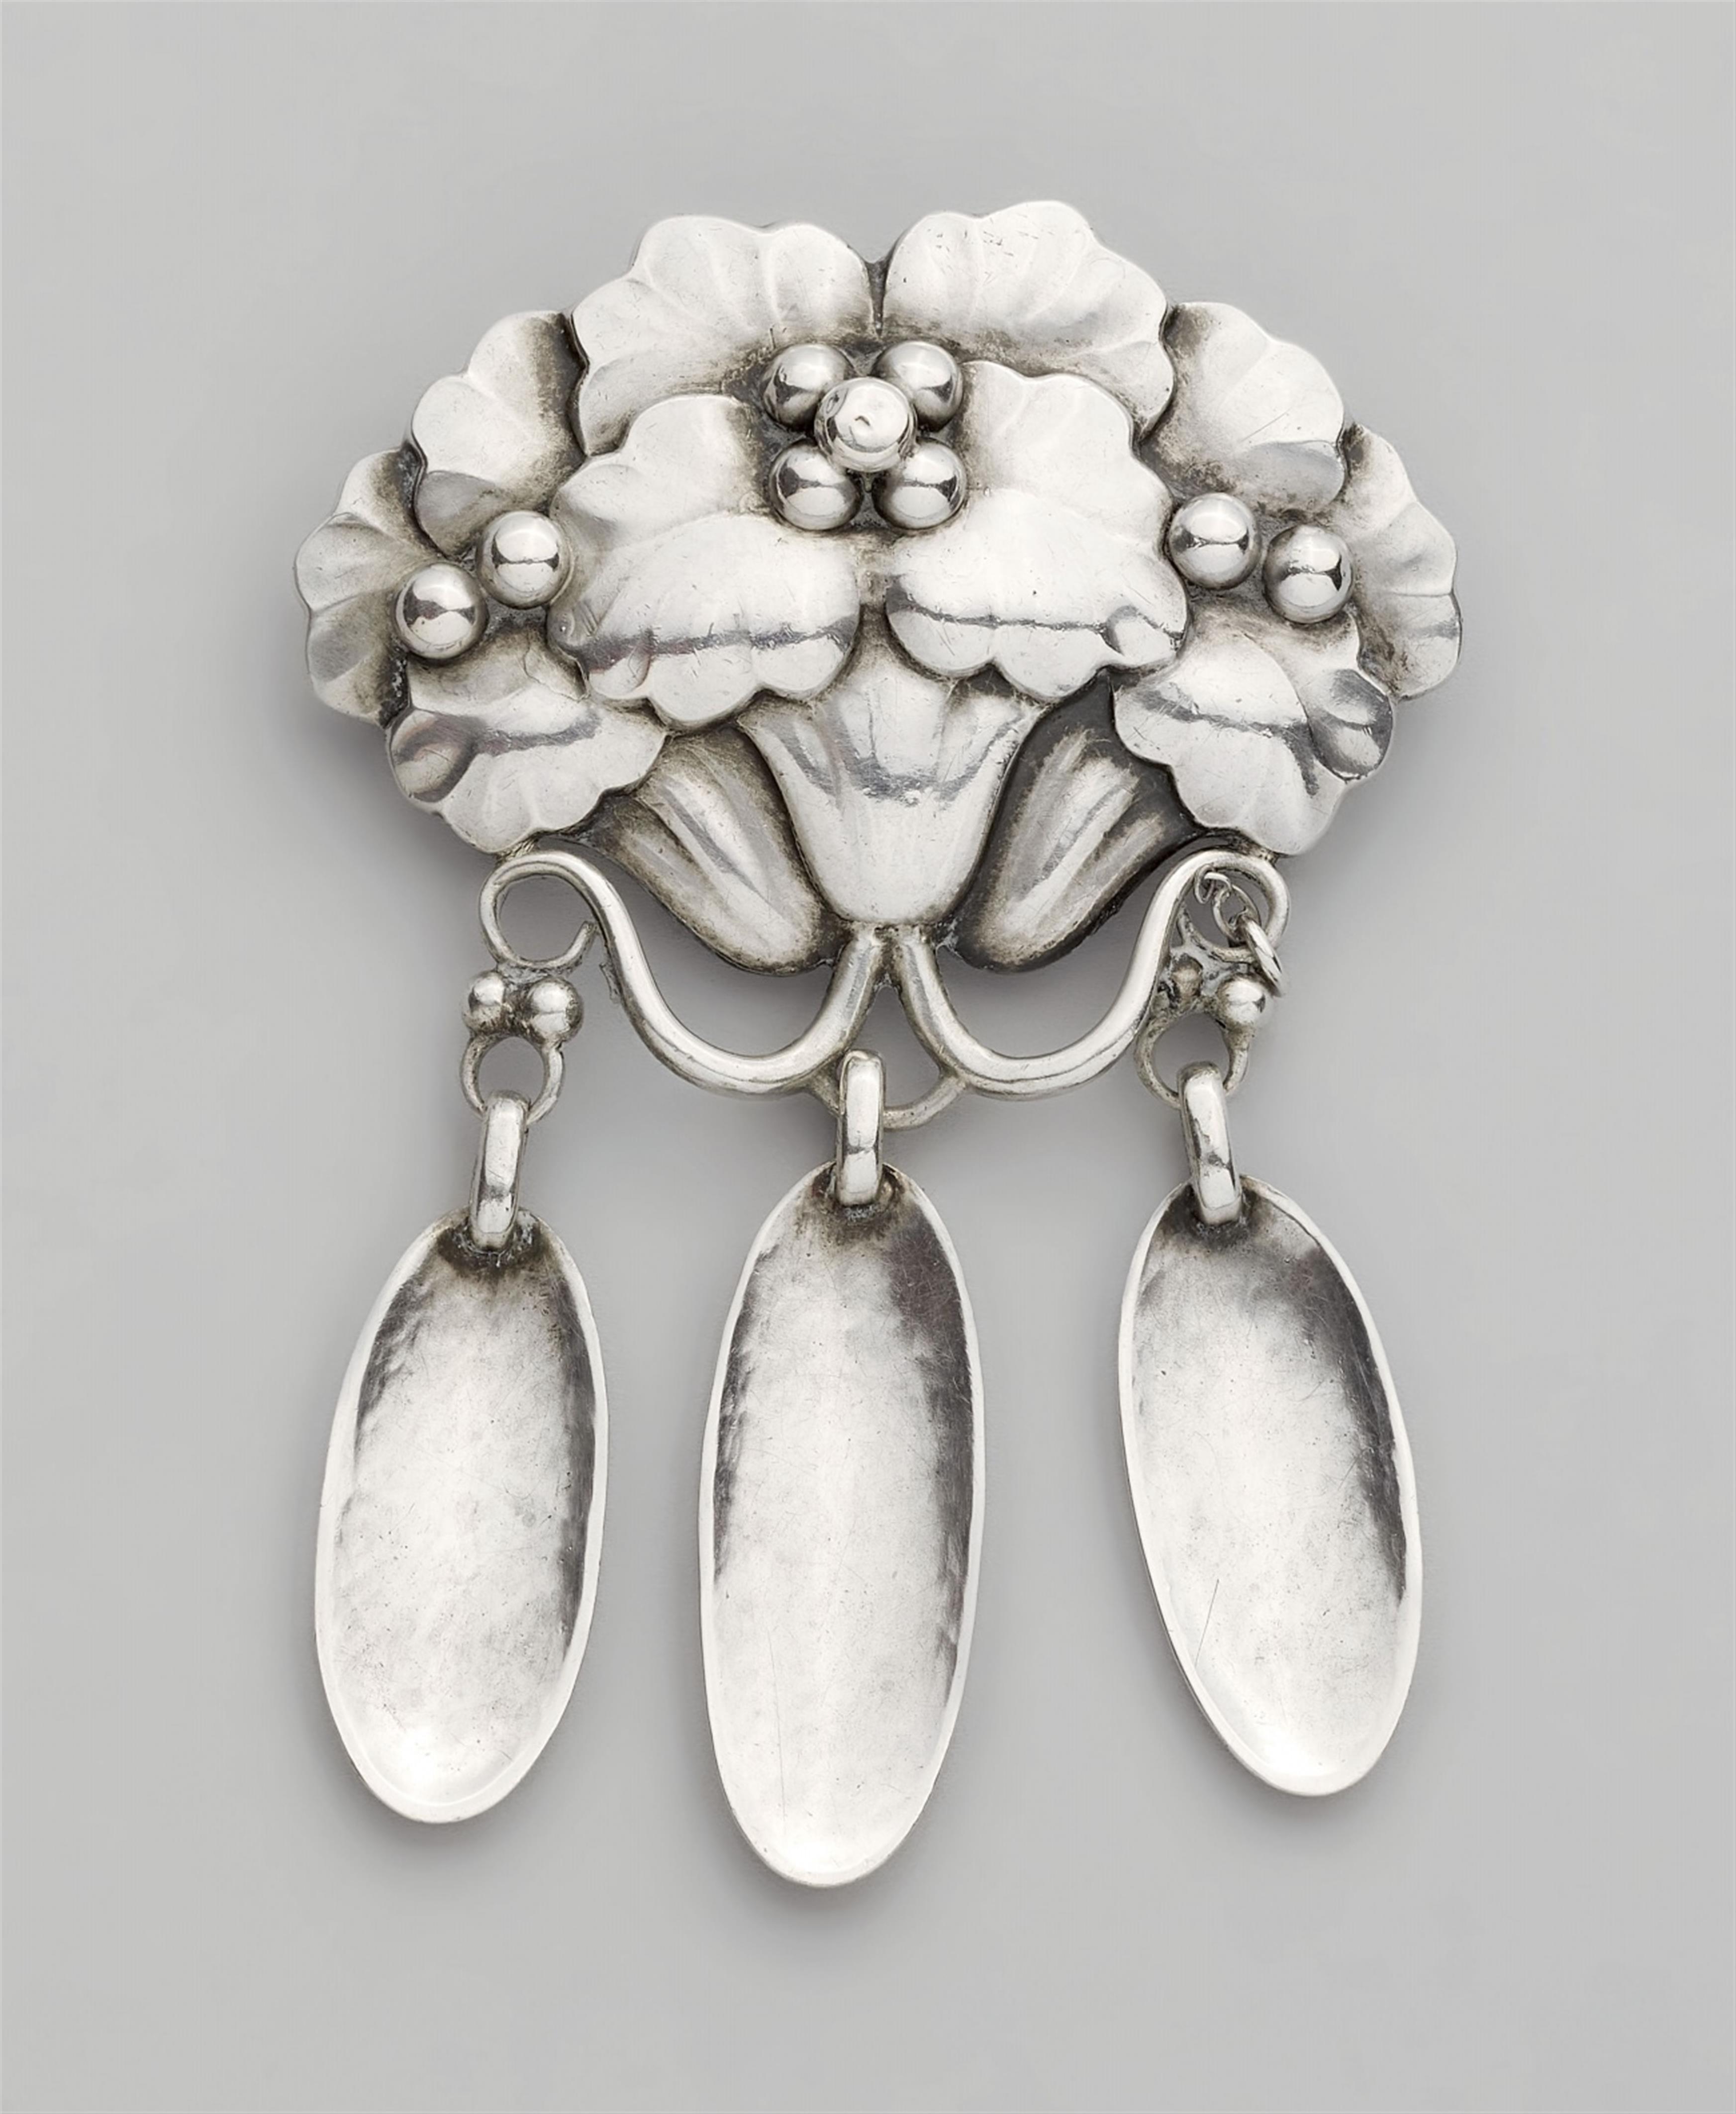 A Jugendstil silver pin by Georg Jensen, model no. 122 - image-1